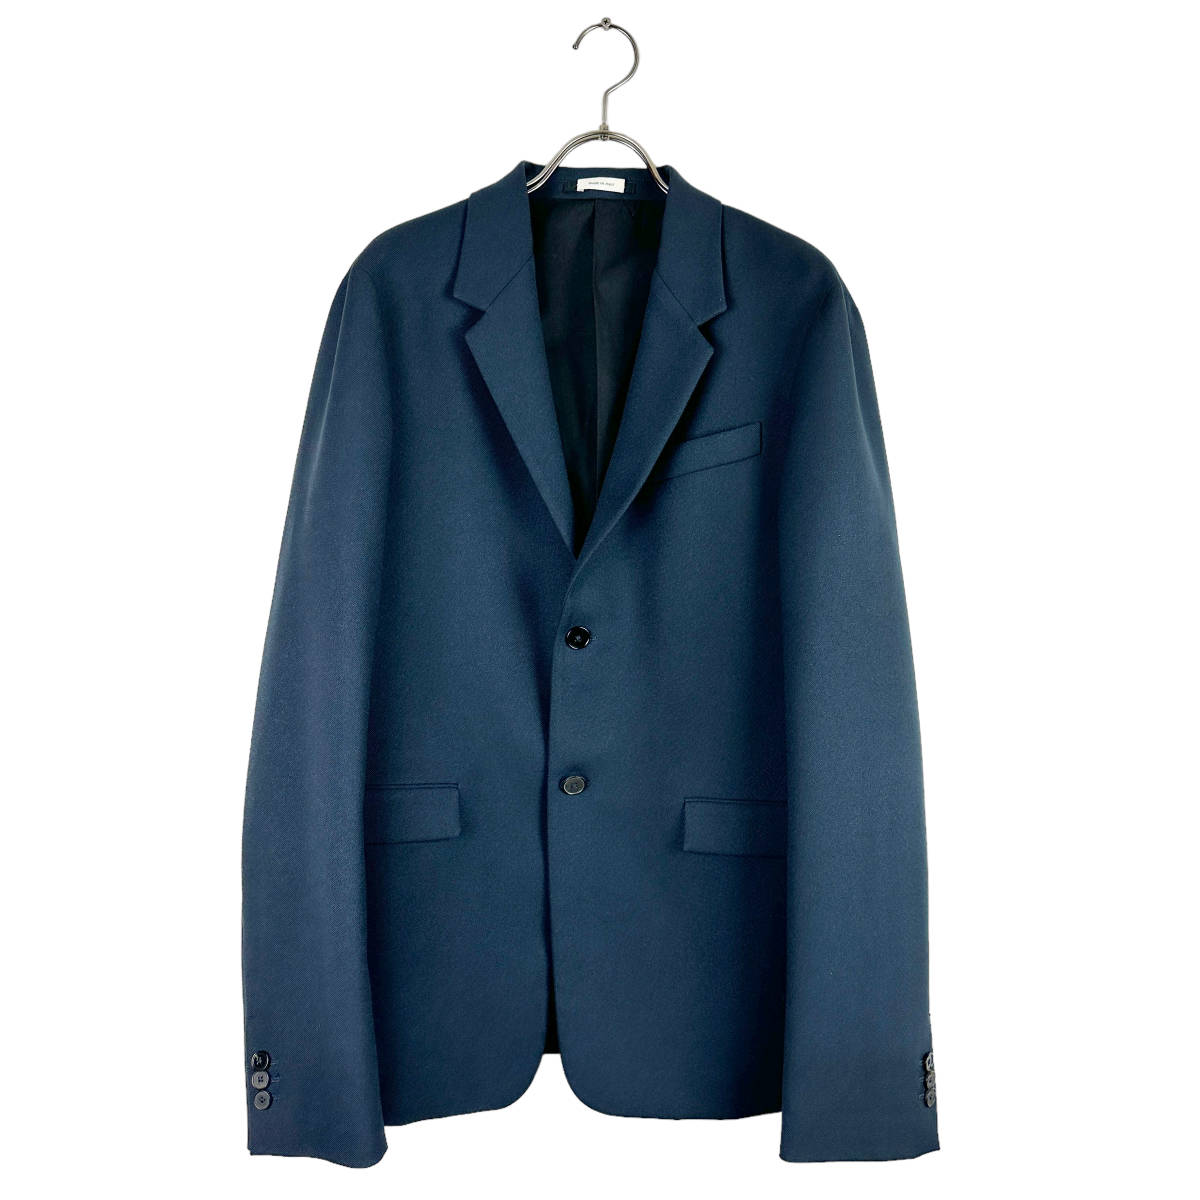 JILSANDER(ジルサンダー) suit jacket (blue)